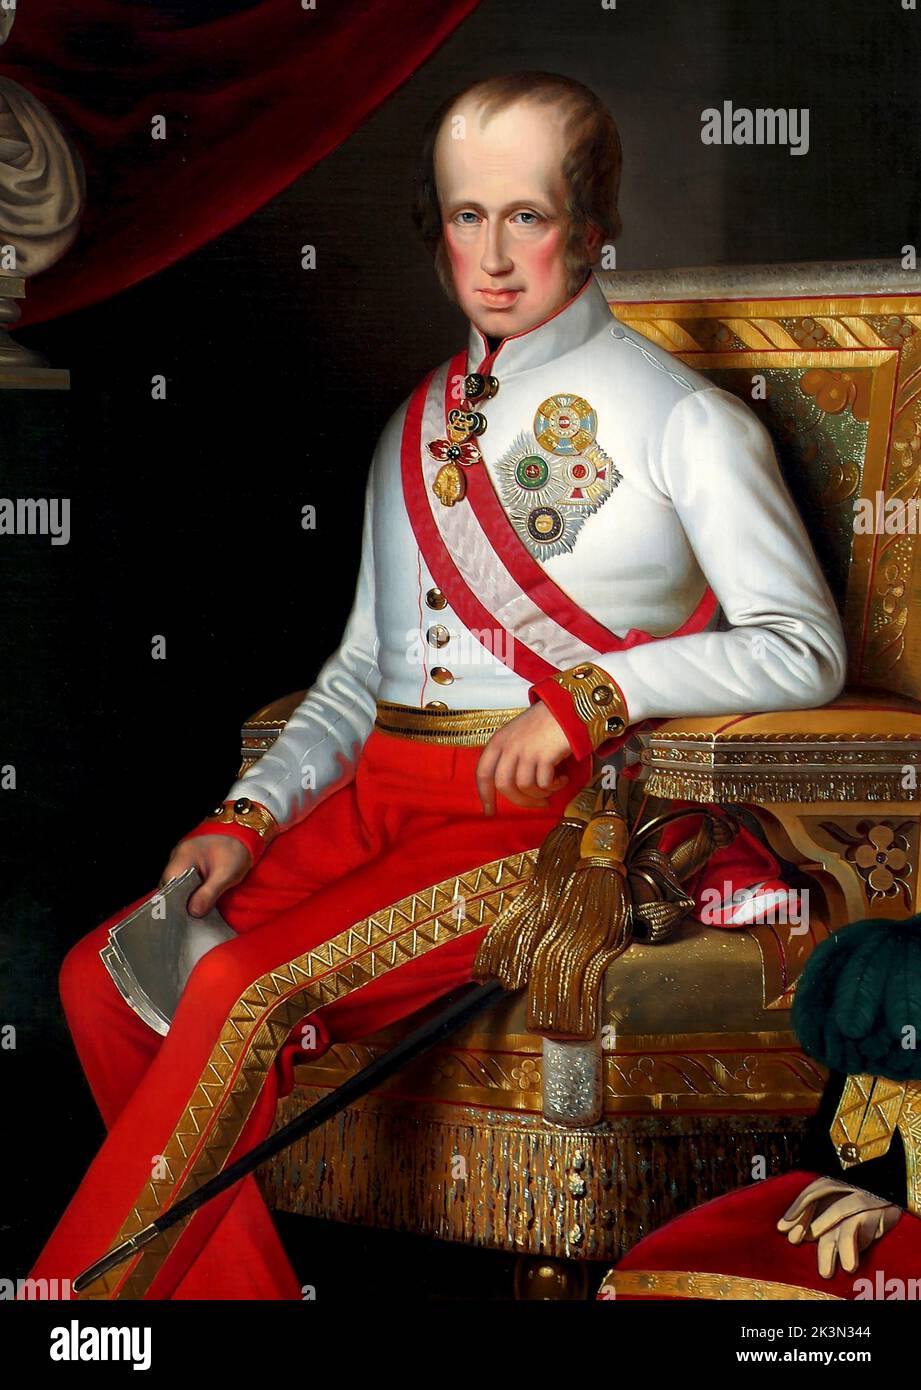 Imperatore Ferdinando i d'Austria. Ferdinando i (1793 – 1875) Imperatore d'Austria dal marzo 1835 fino alla sua abdicazione nel dicembre 1848. Fu anche re di Ungheria, Croazia e Boemia (come Ferdinando V), re di Lombardia-Veneto Foto Stock